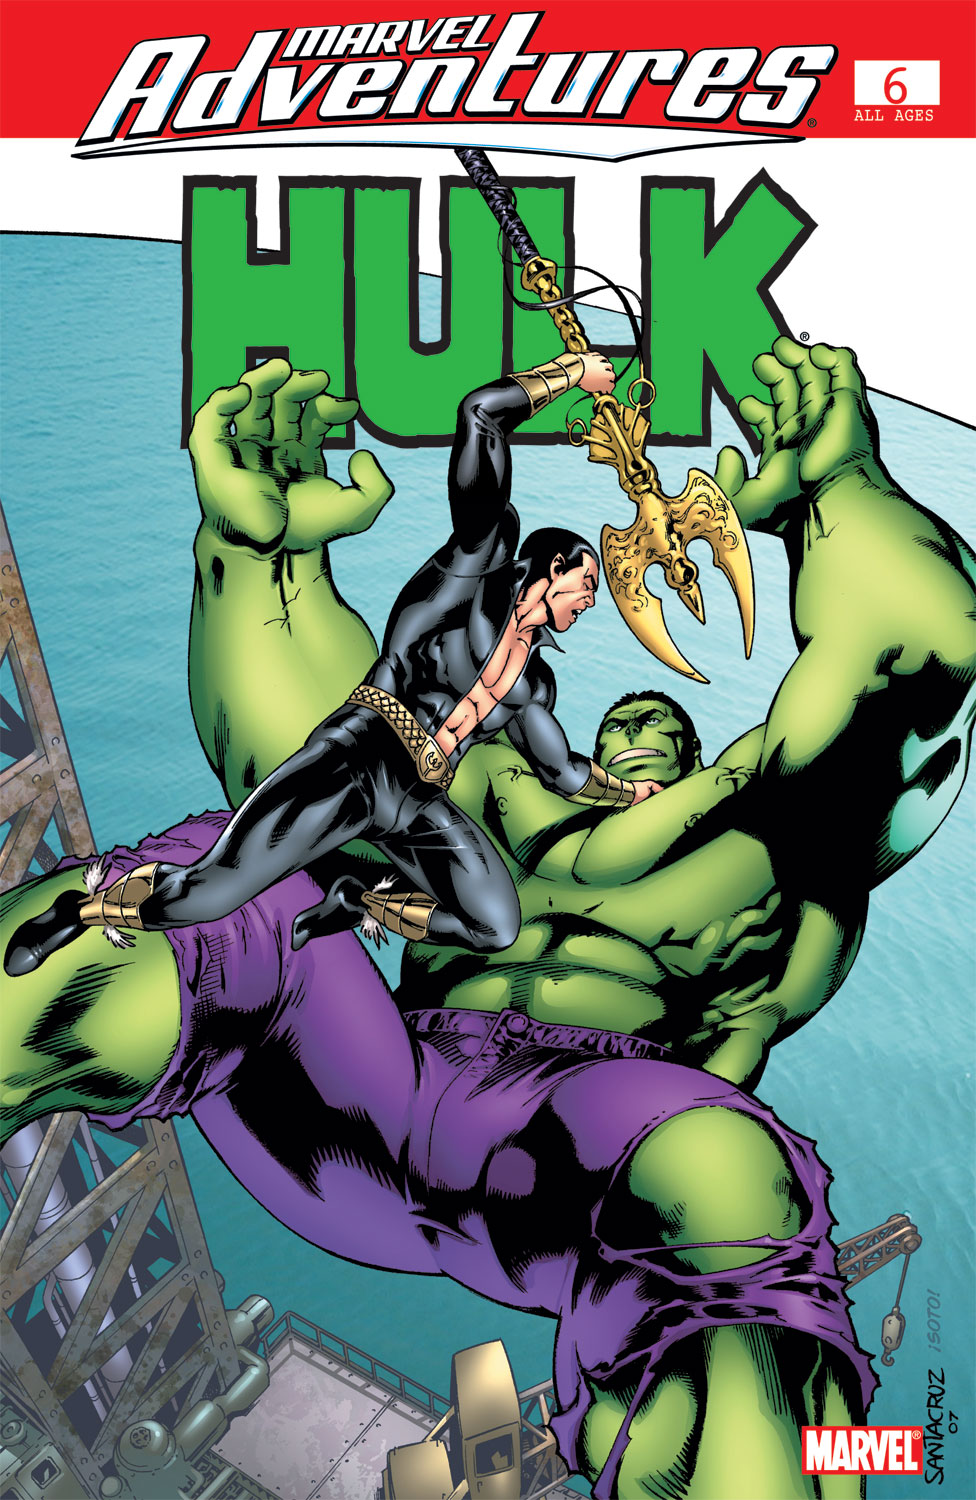 Marvel Adventures Hulk (2007) #6